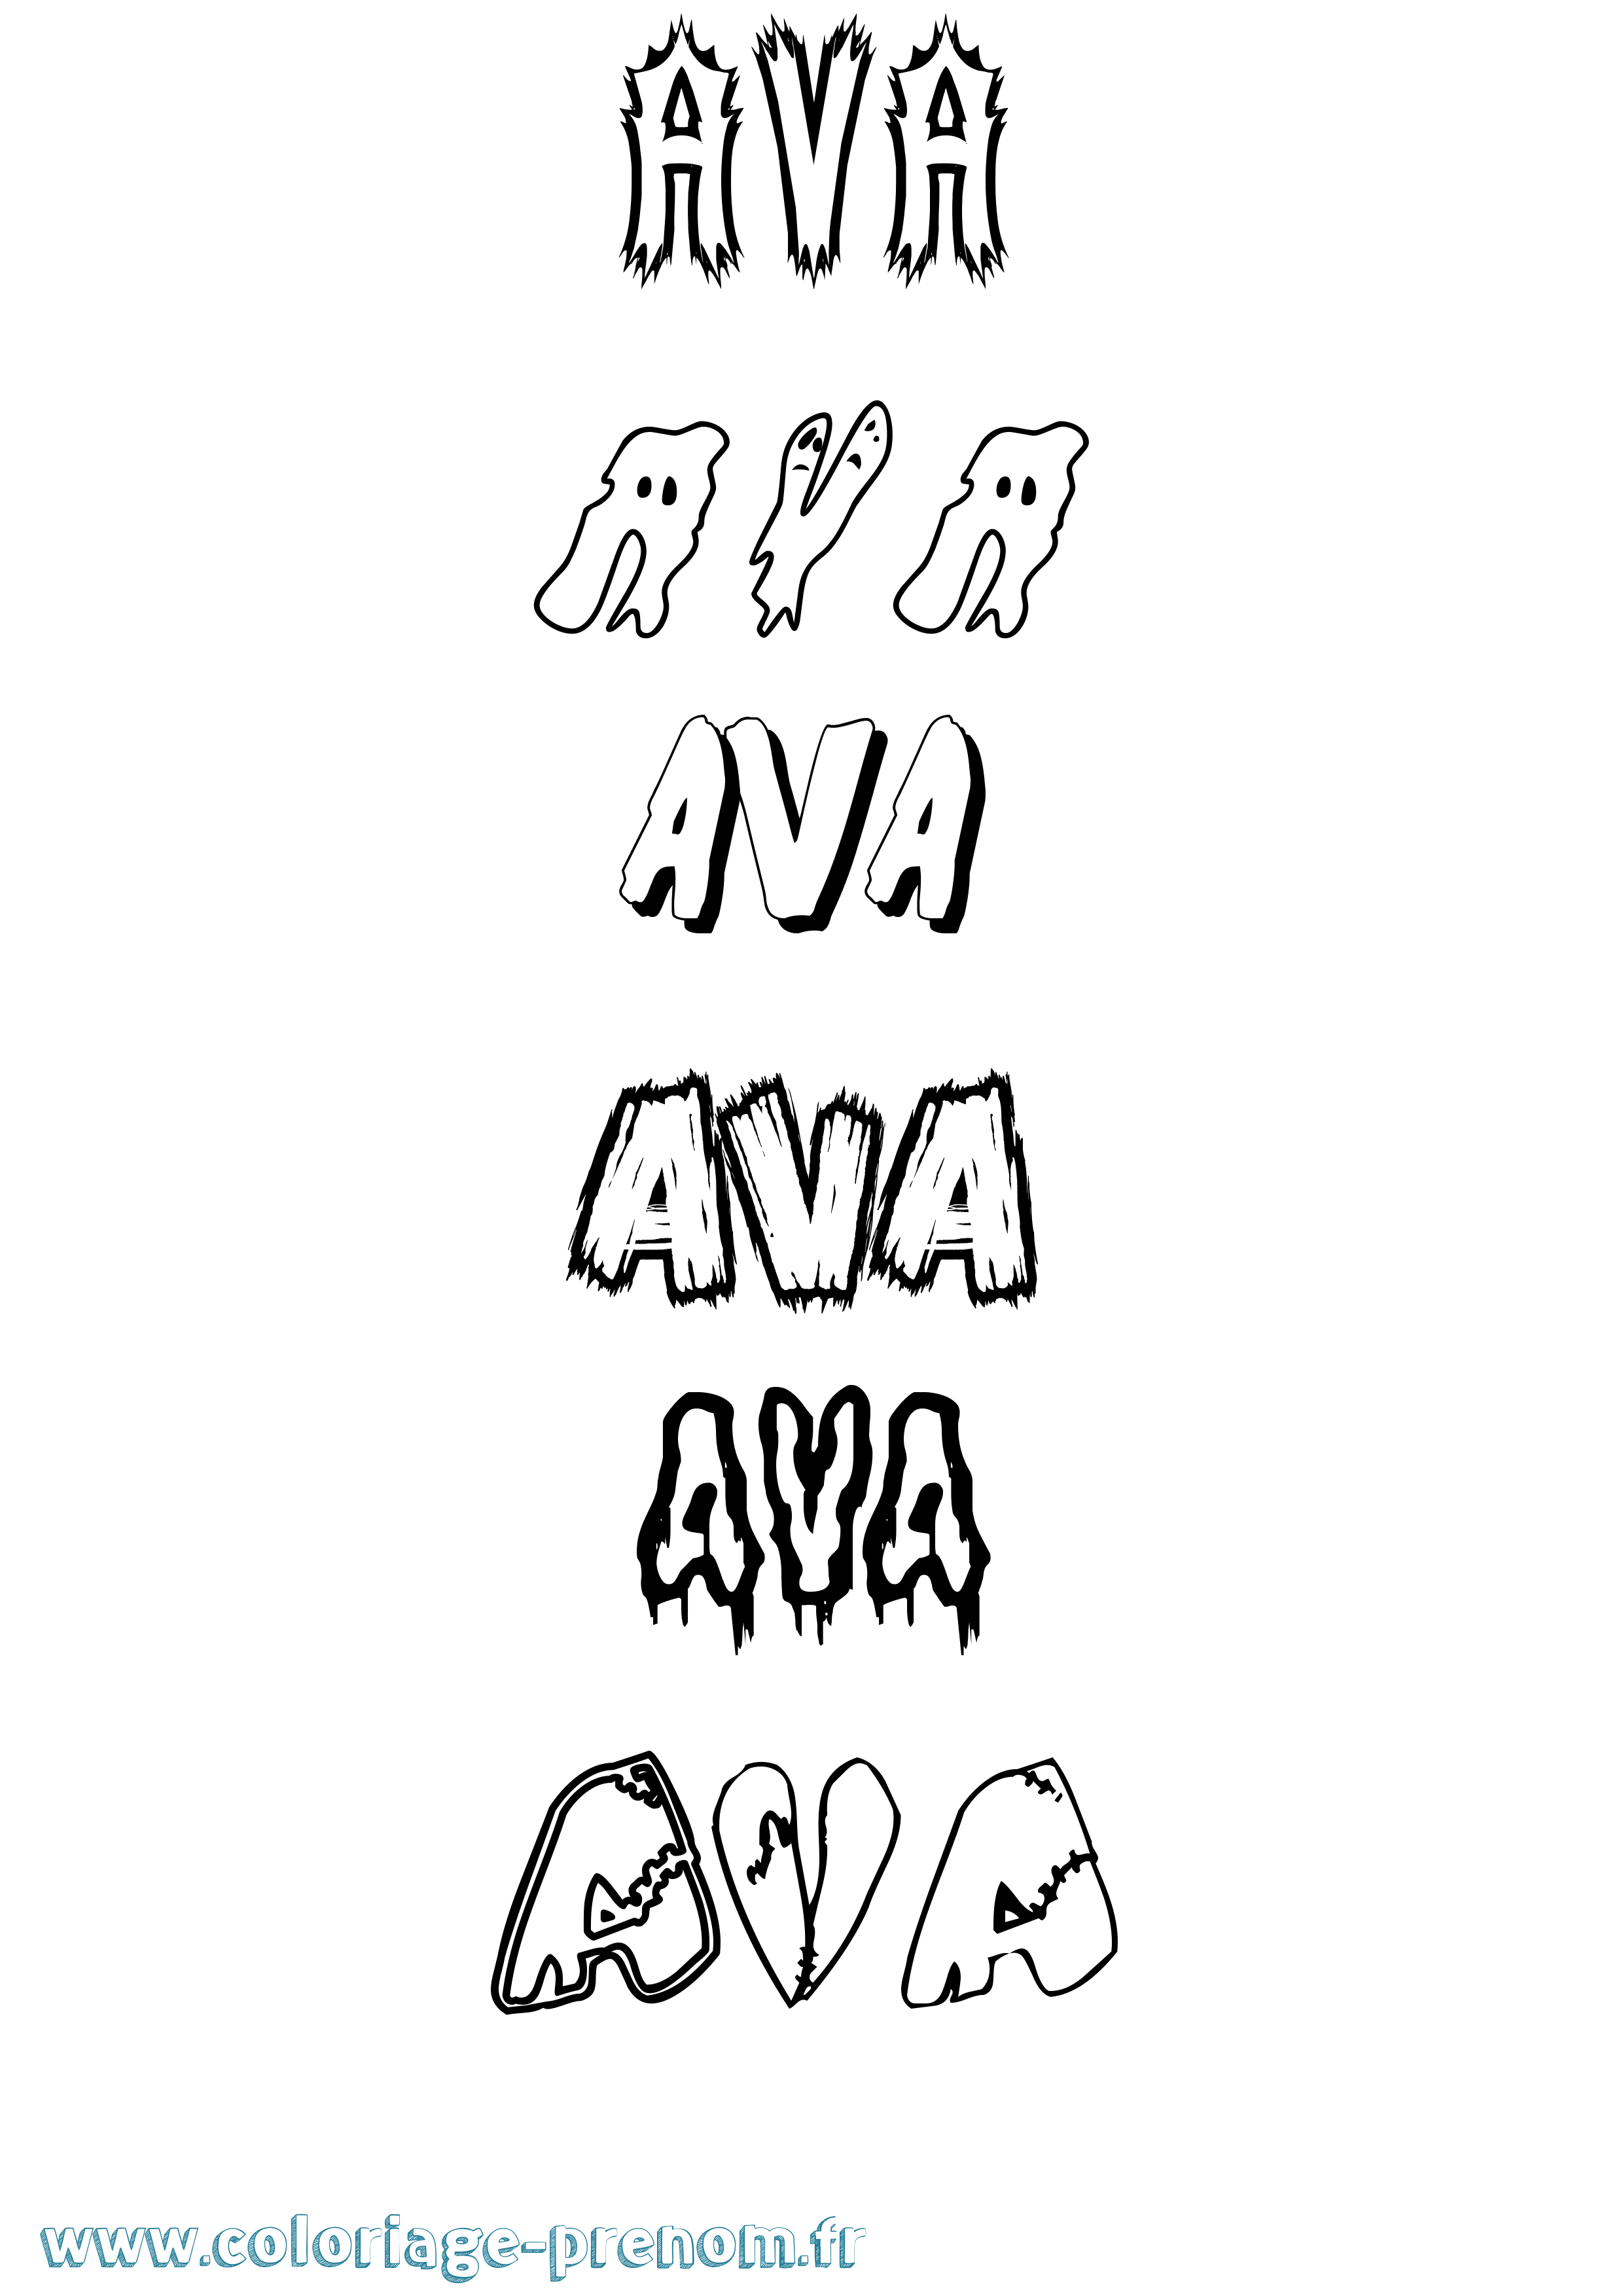 Coloriage prénom Ava